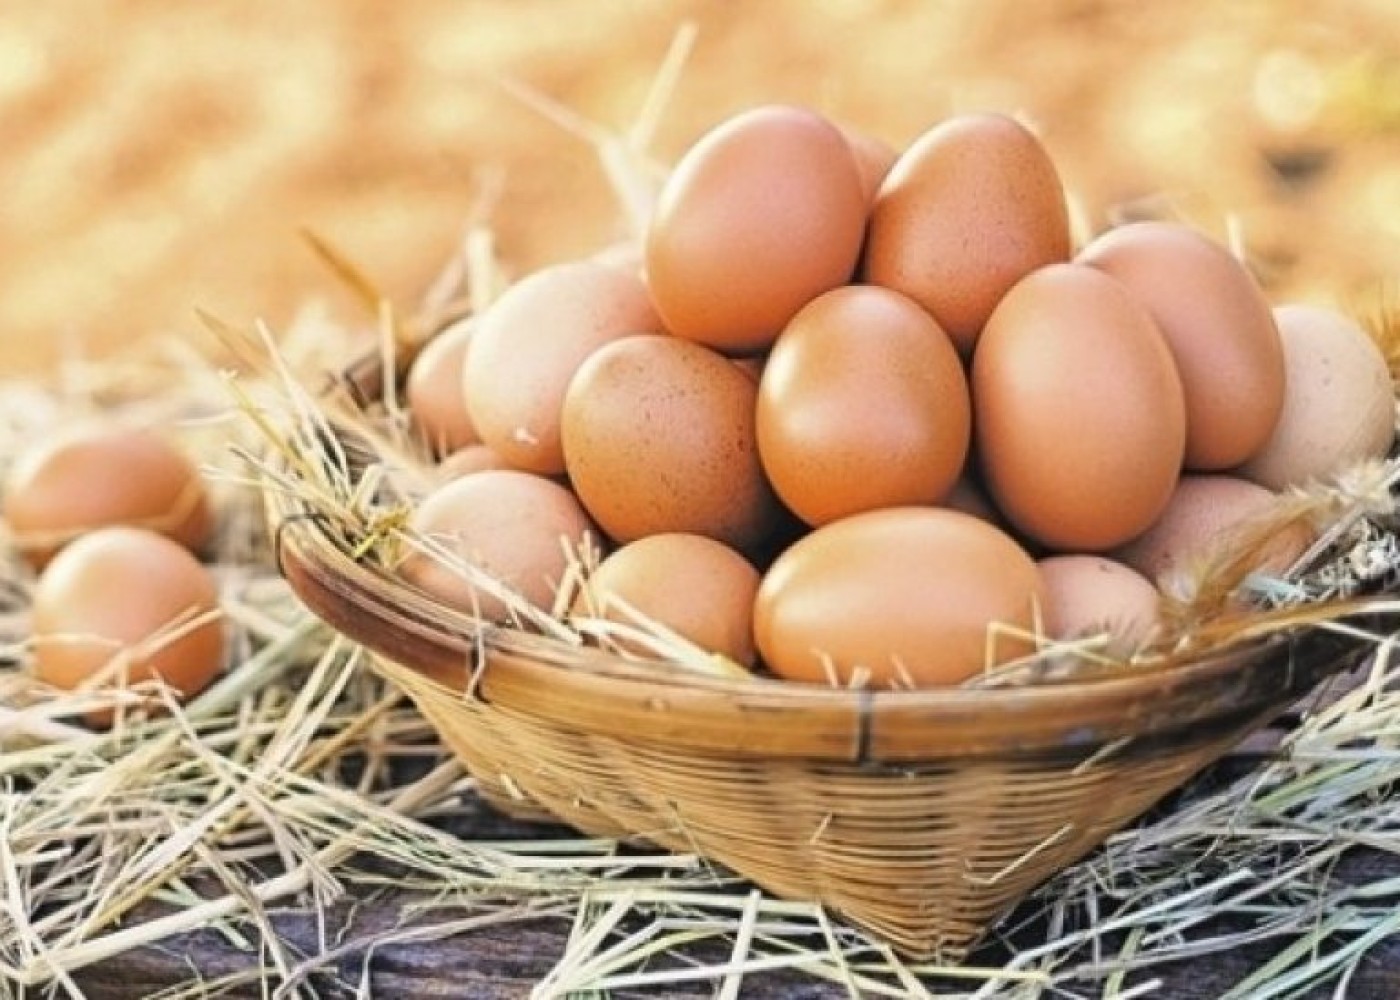 Yanvarda Azərbaycandan Rusiyaya göndərilən yumurtaların sayı açıqlandı